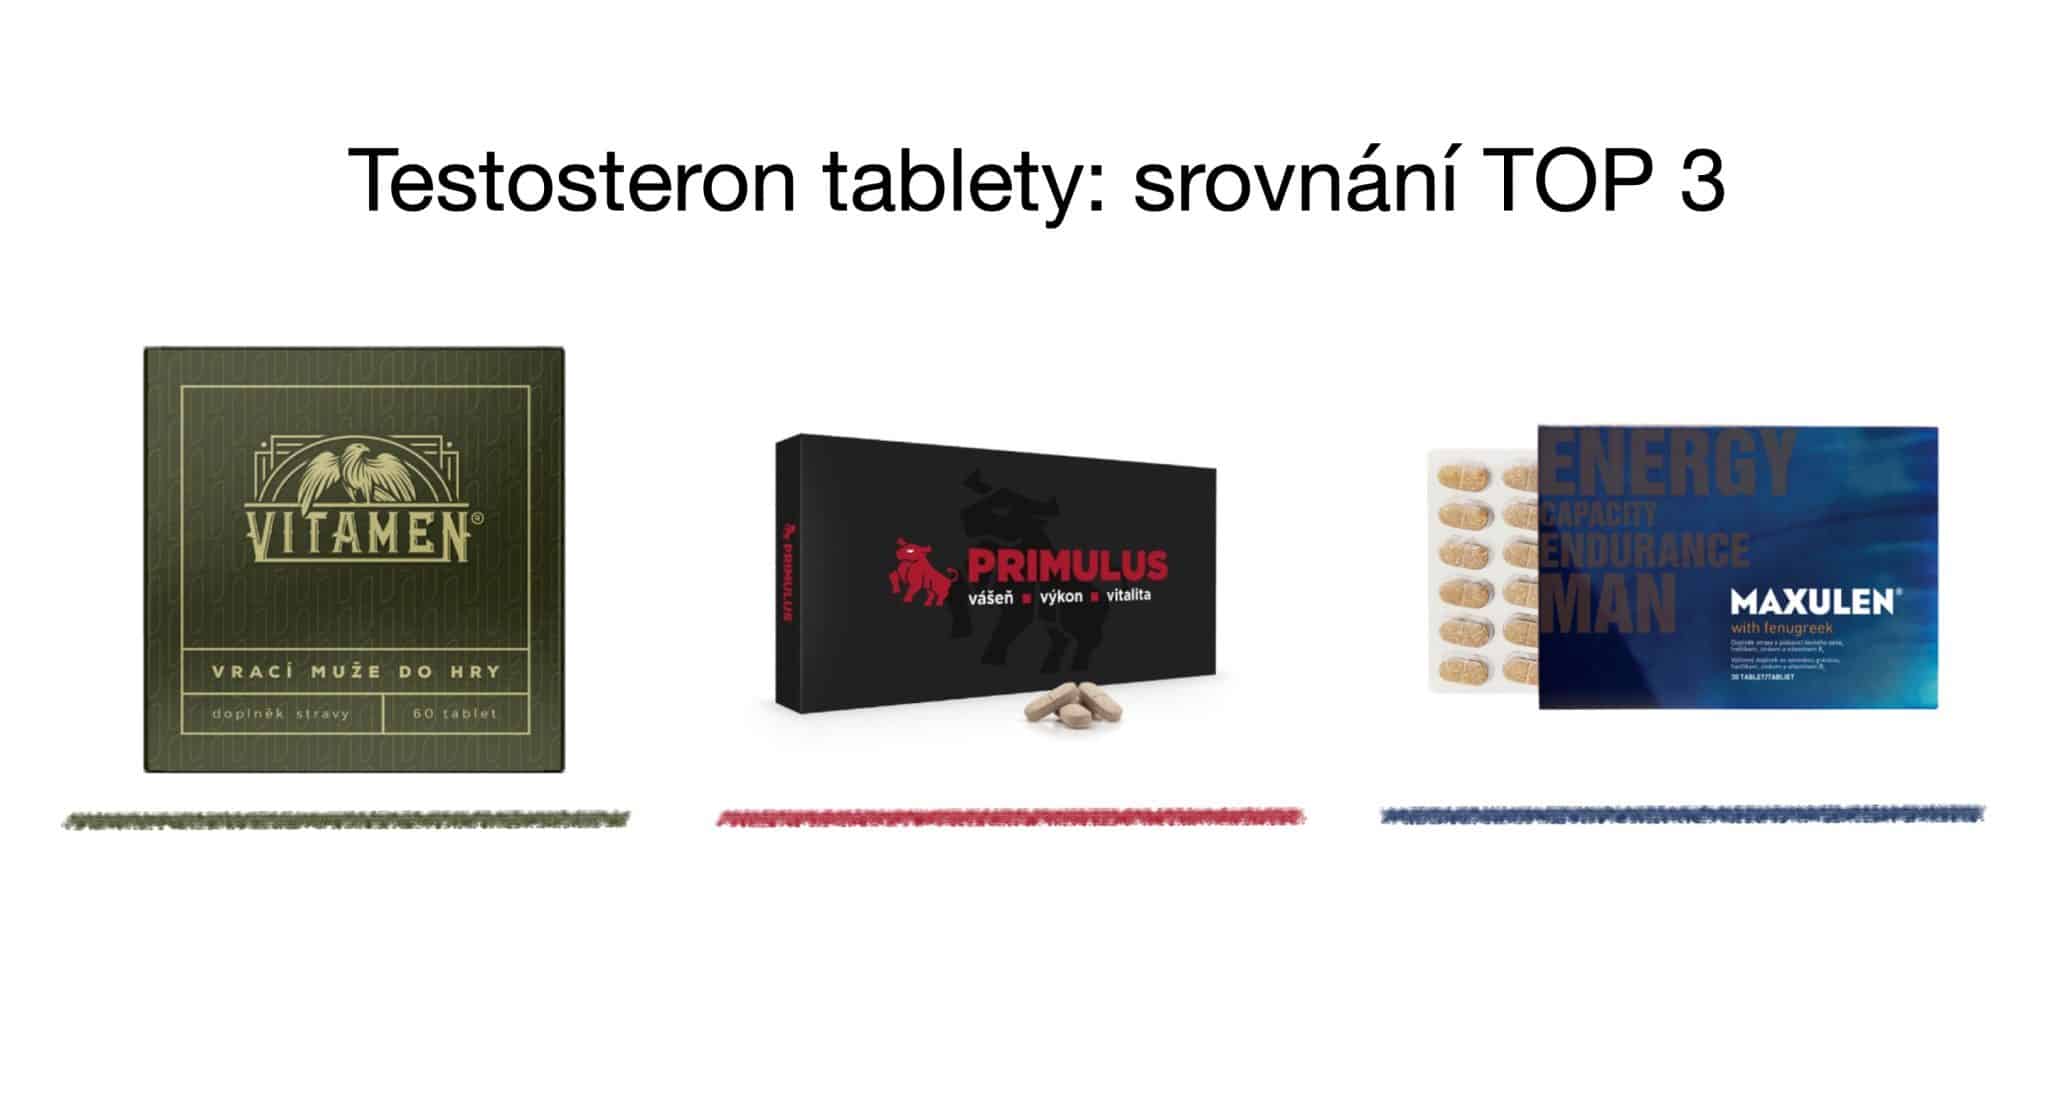 Testosteron tablety TOP 3 srovnání – vitamíny pro muže [recenze] 5